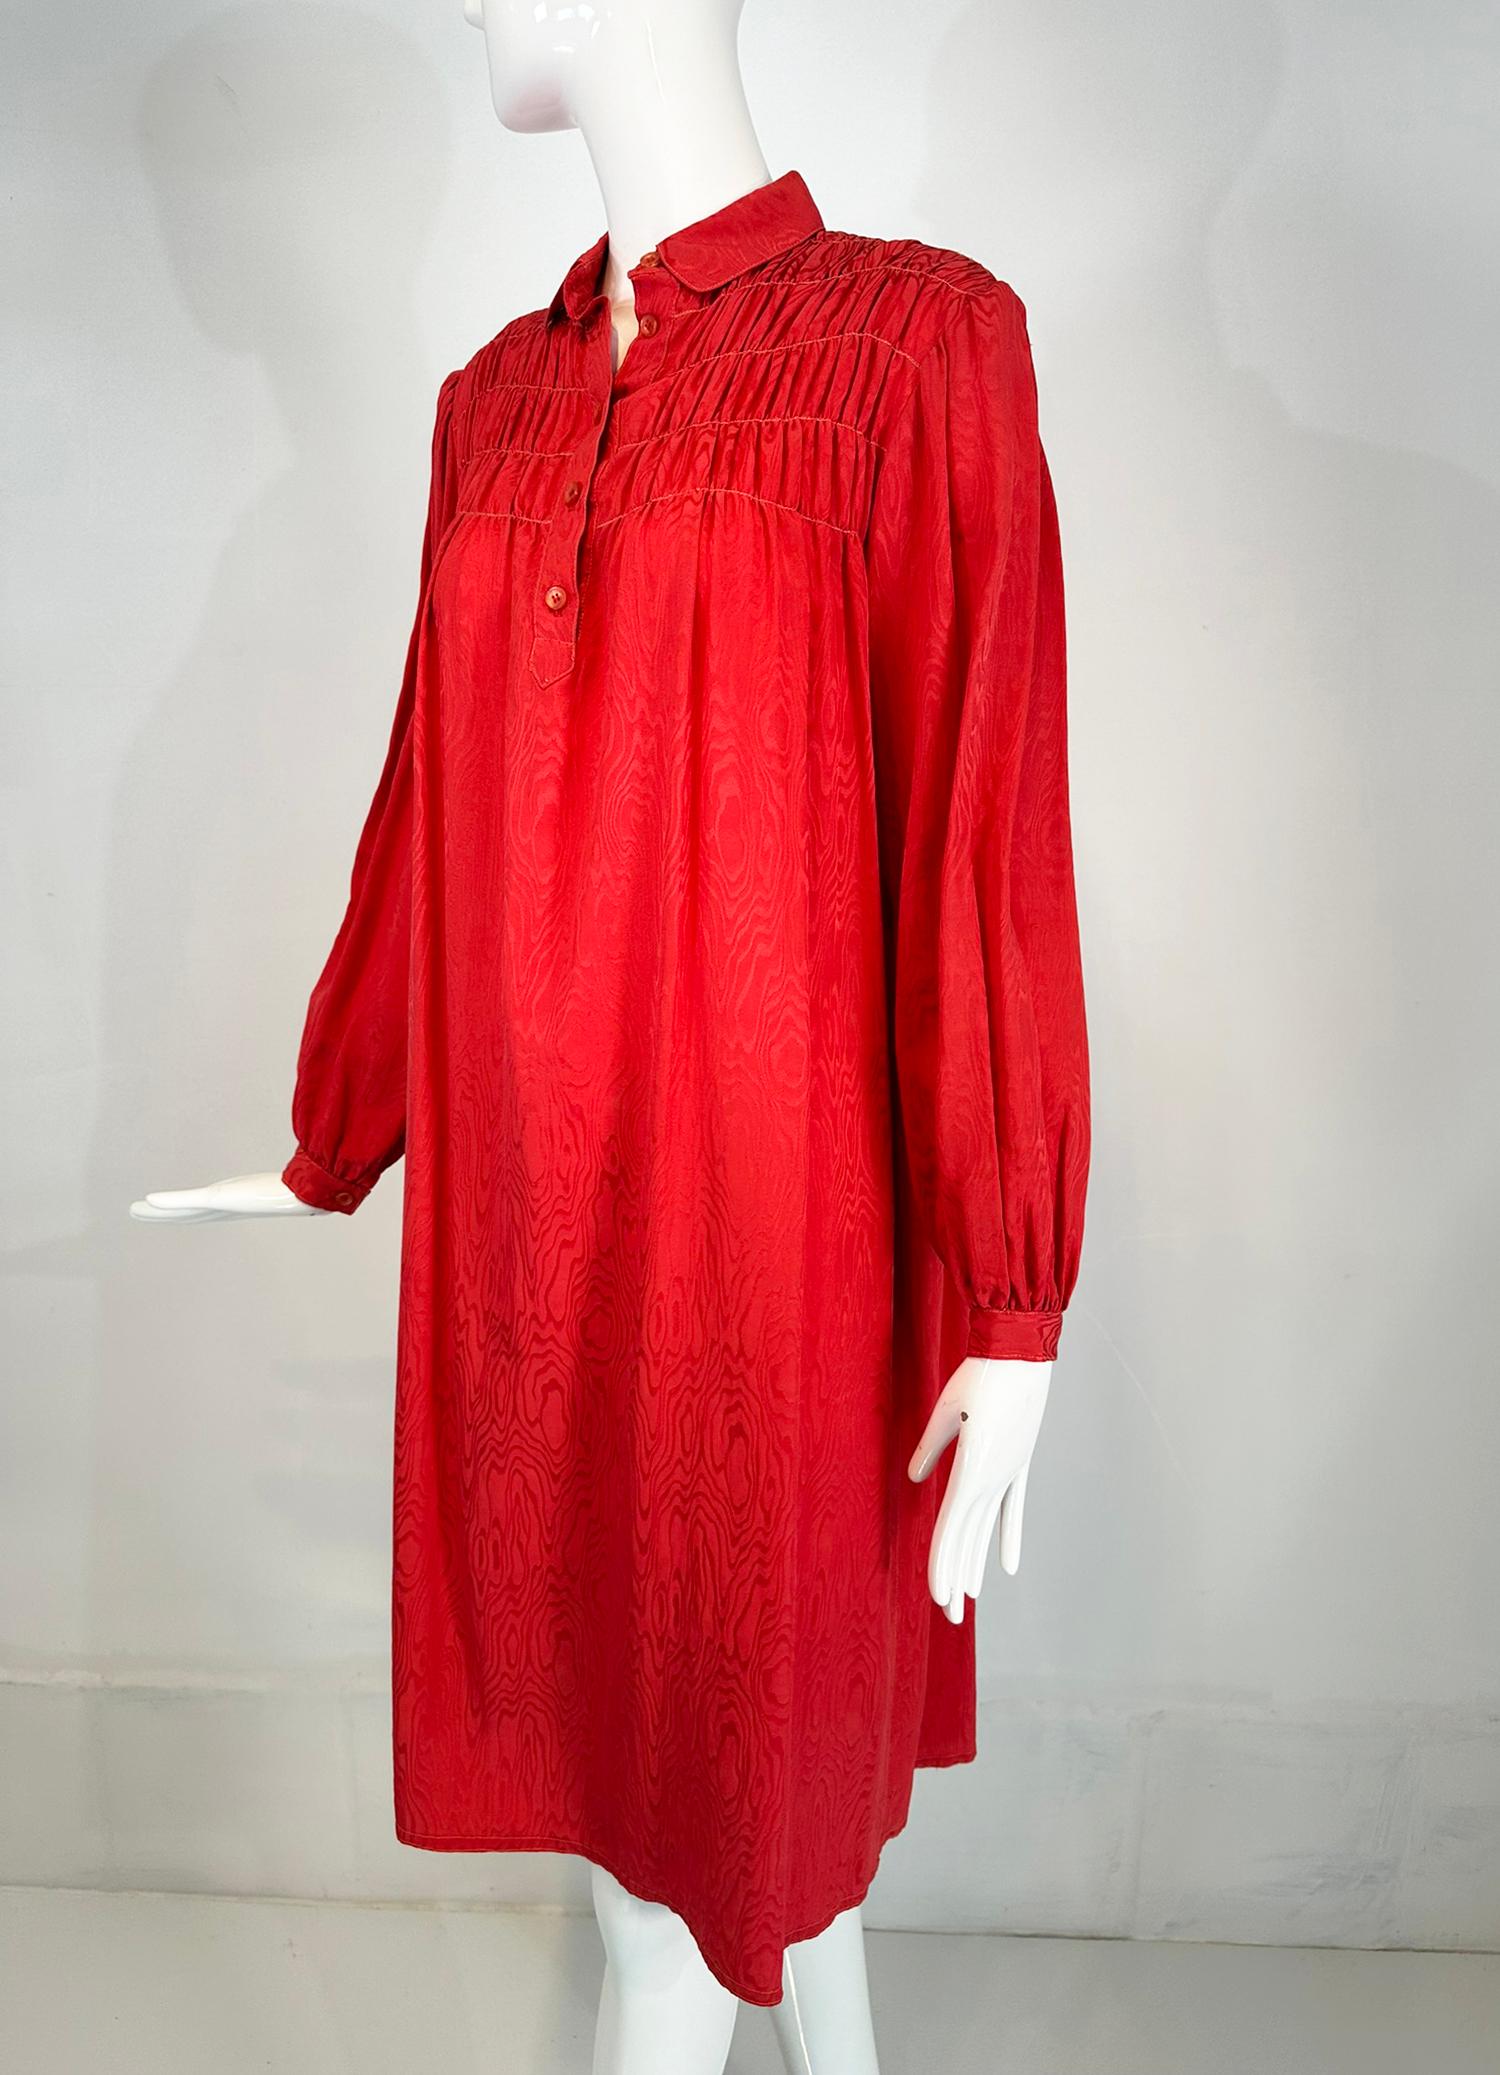 Korallenrotes Jacquard-Smokkleid aus Seide von Geoffrey Beene aus den 1970er Jahren. Langärmeliges Kleid mit Knopfmanschette, Peter-Pan-Kragen und Knopfleiste. Die geraffte Schulterpartie vorne und hinten sieht aus wie gesmokt. Das Kleid ist